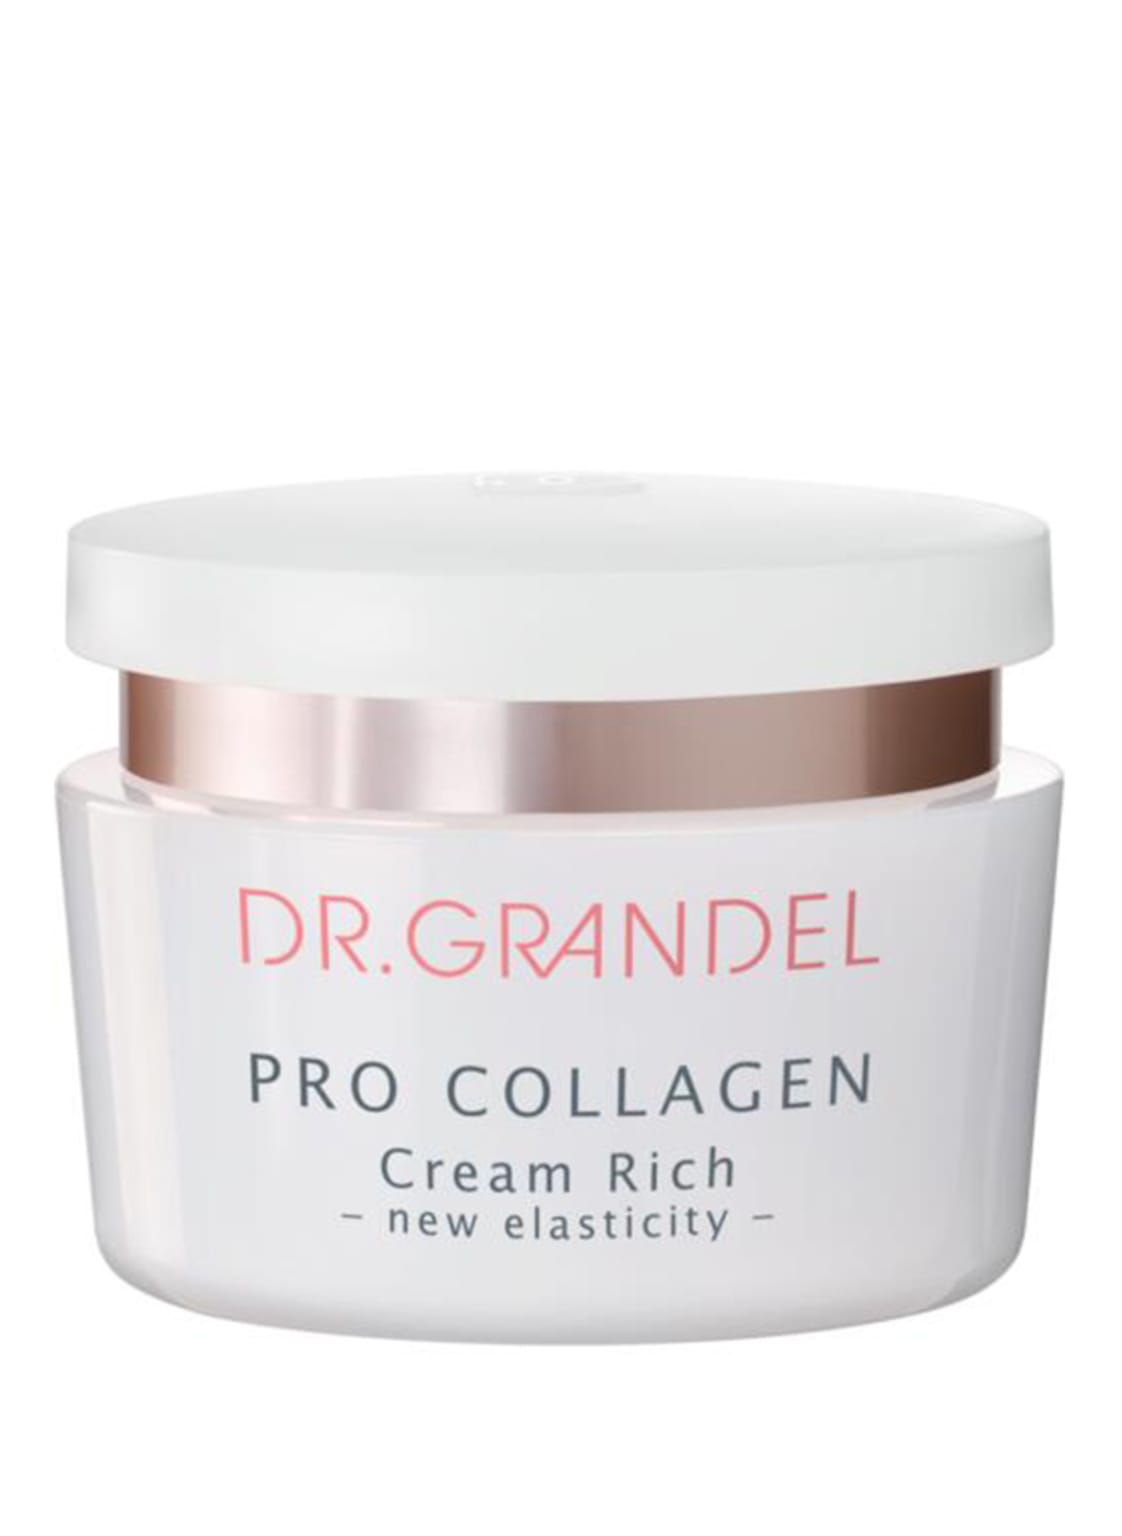 Dr. Grandel Pro Collagen - Cream Riche Glättende 24 h Pflegecreme für trockene Haut 50 ml von DR. GRANDEL